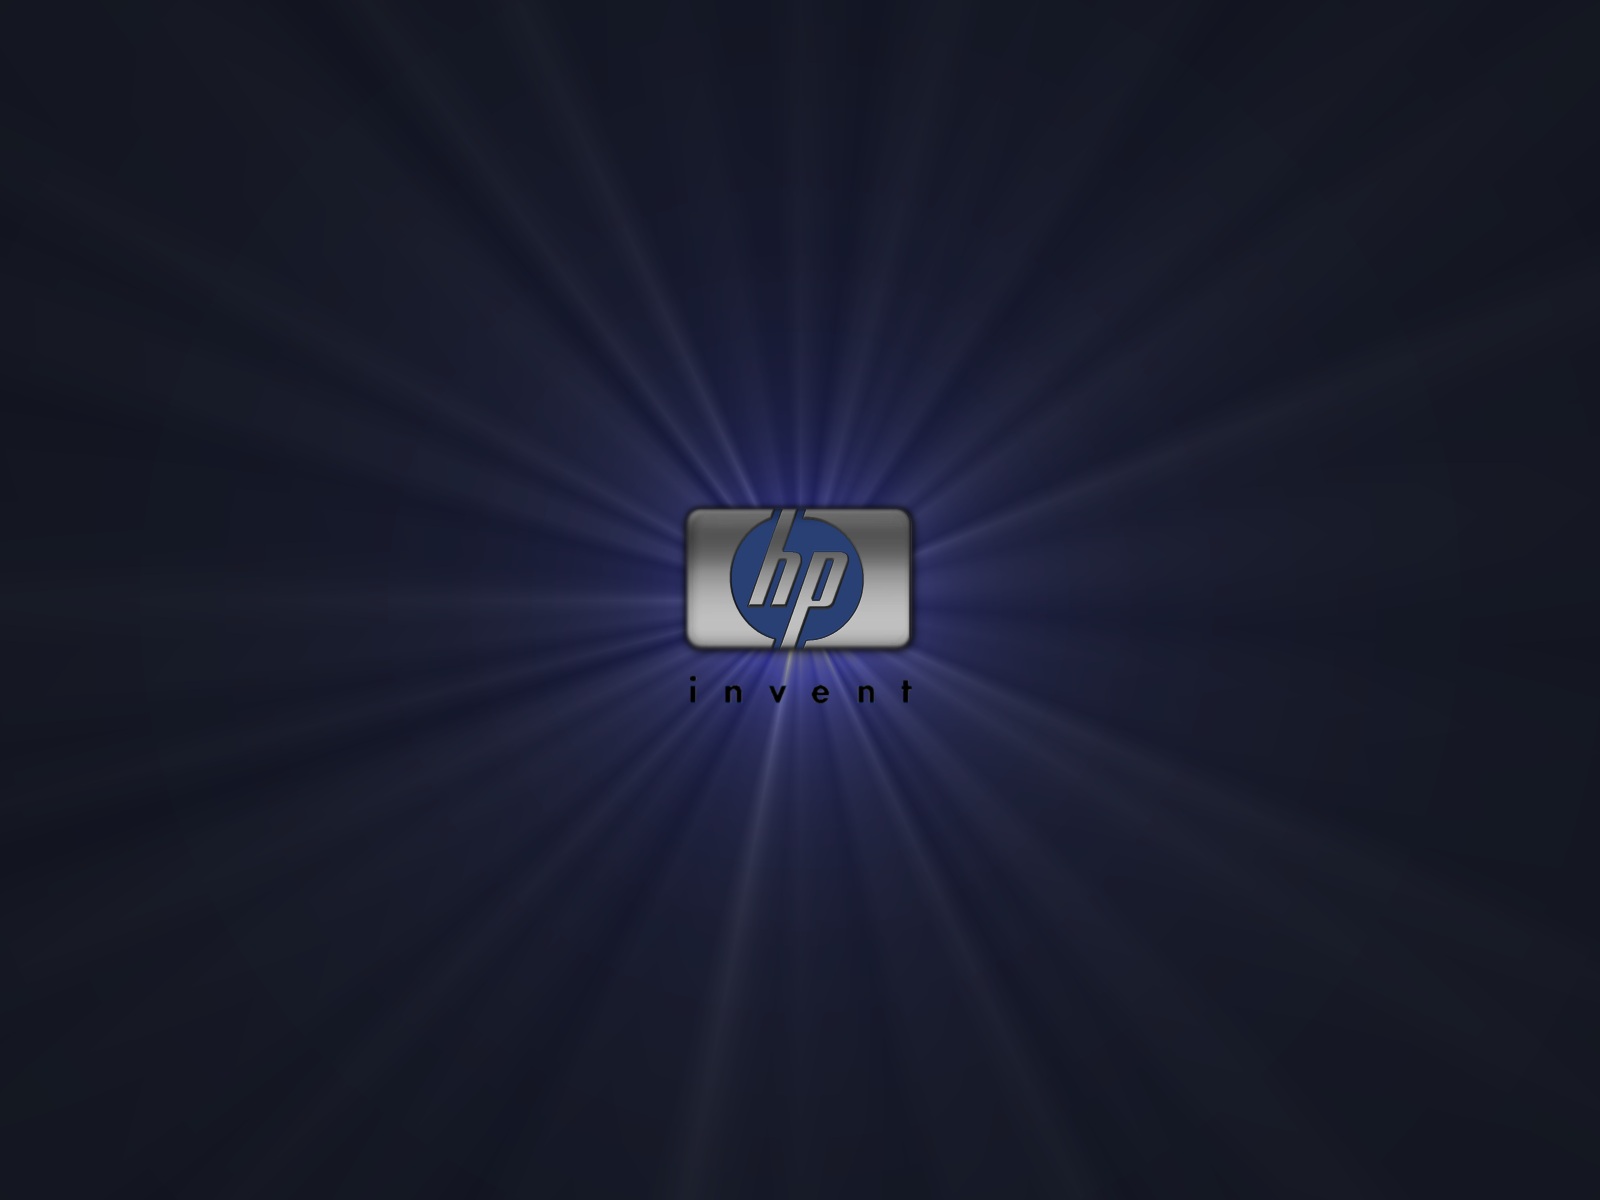 Puter Hp Desktop Background